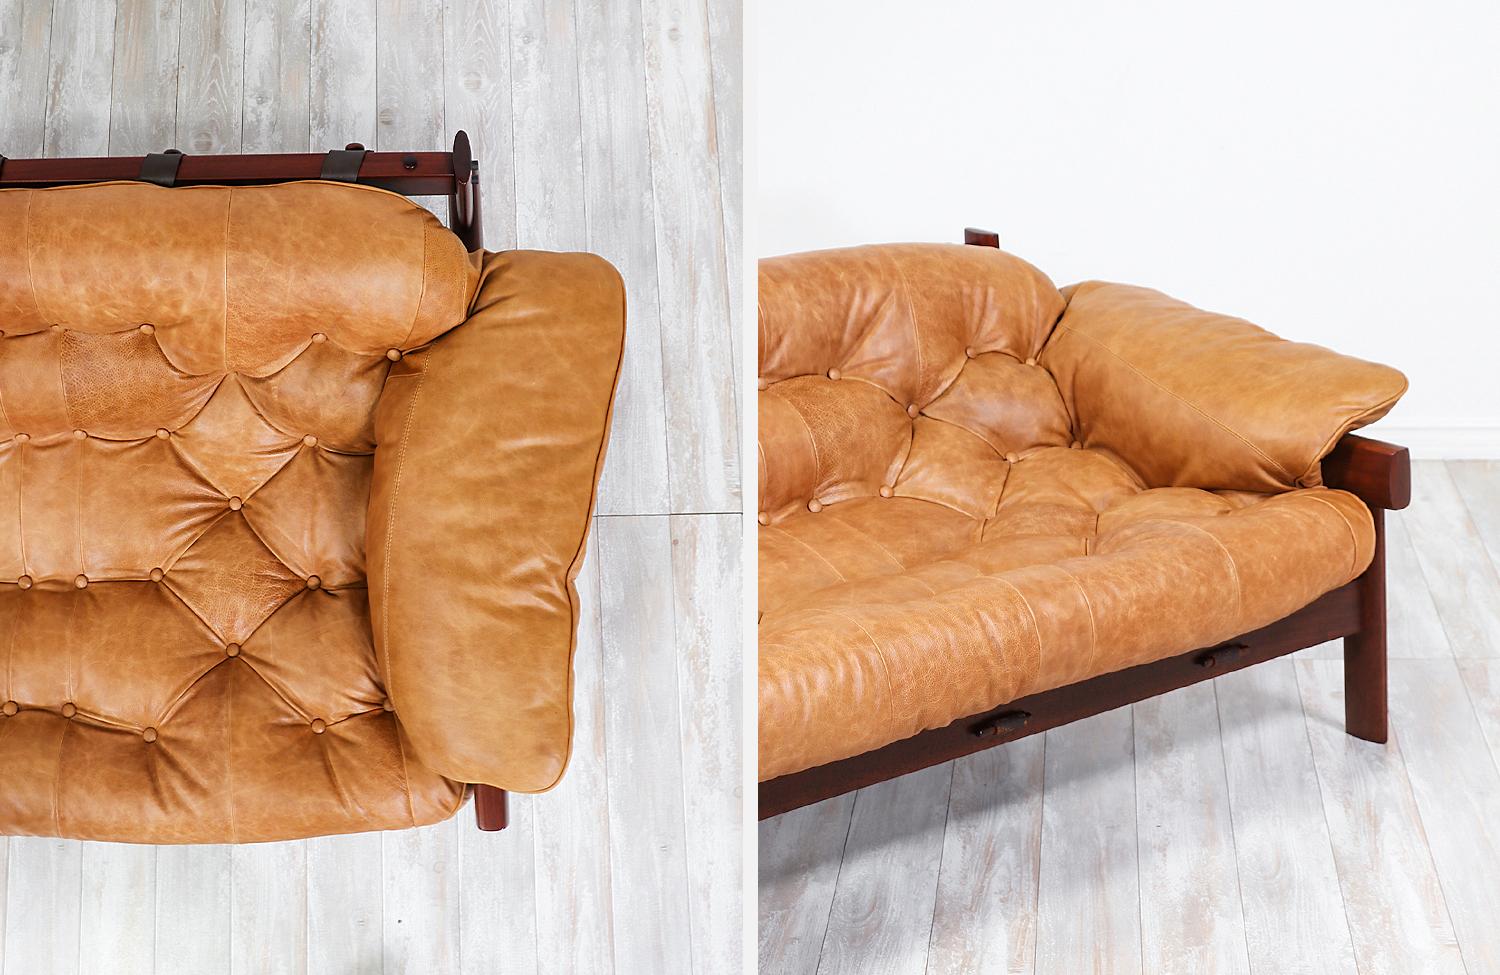 Percival Lafer MP-41 Series Brazilian Leather Sofa 3